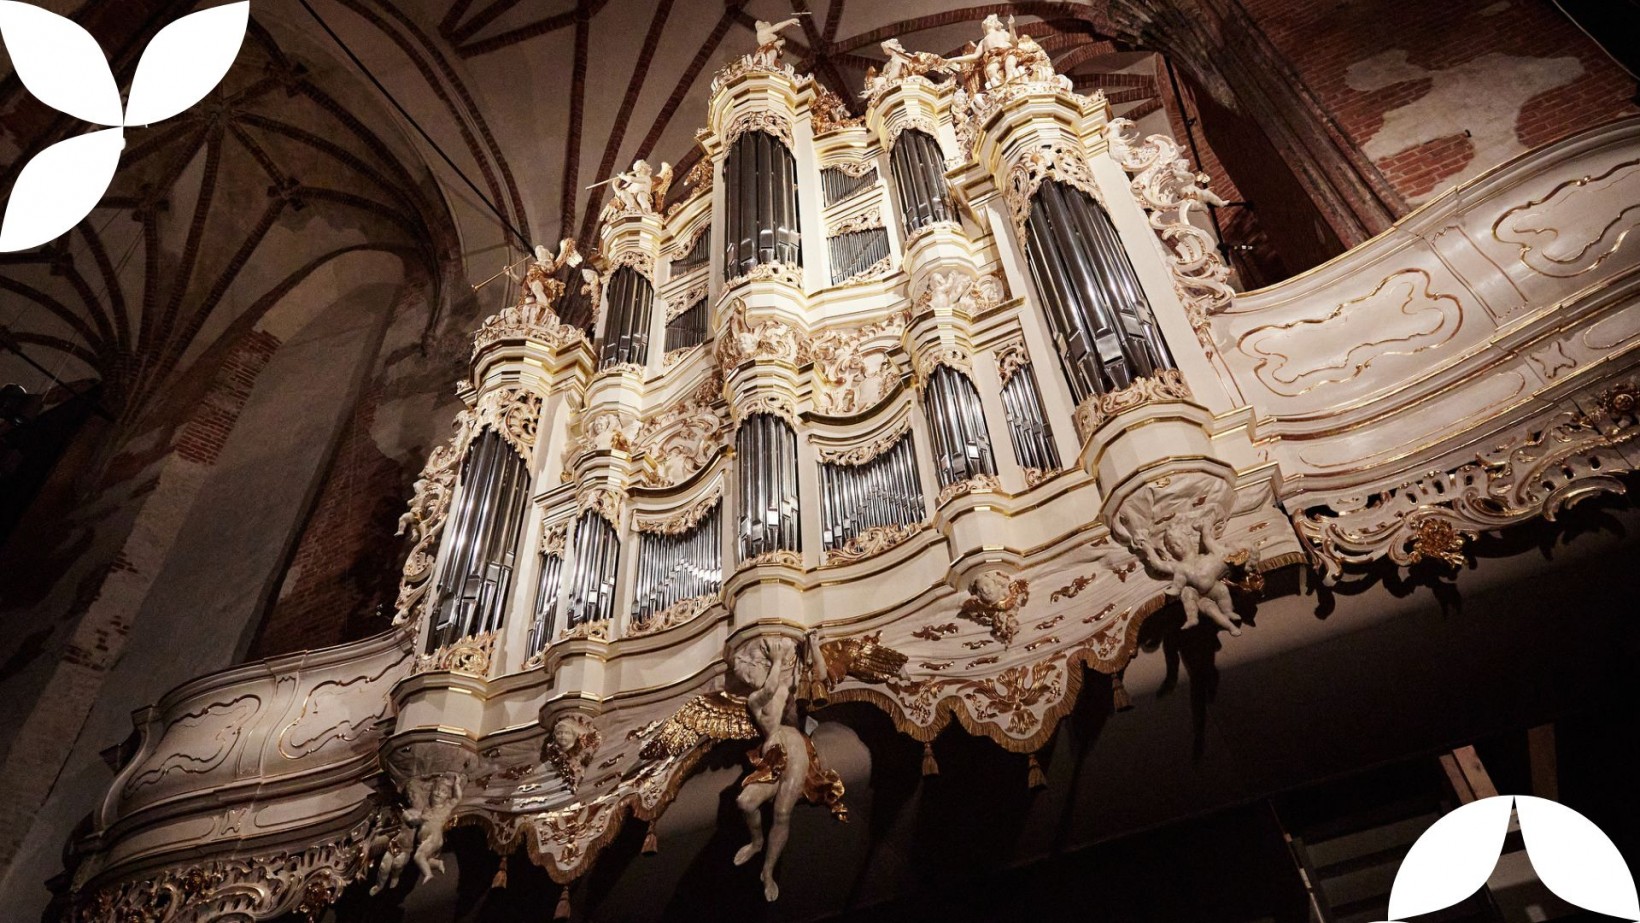 Koncerty organowe w Centrum św. Jana